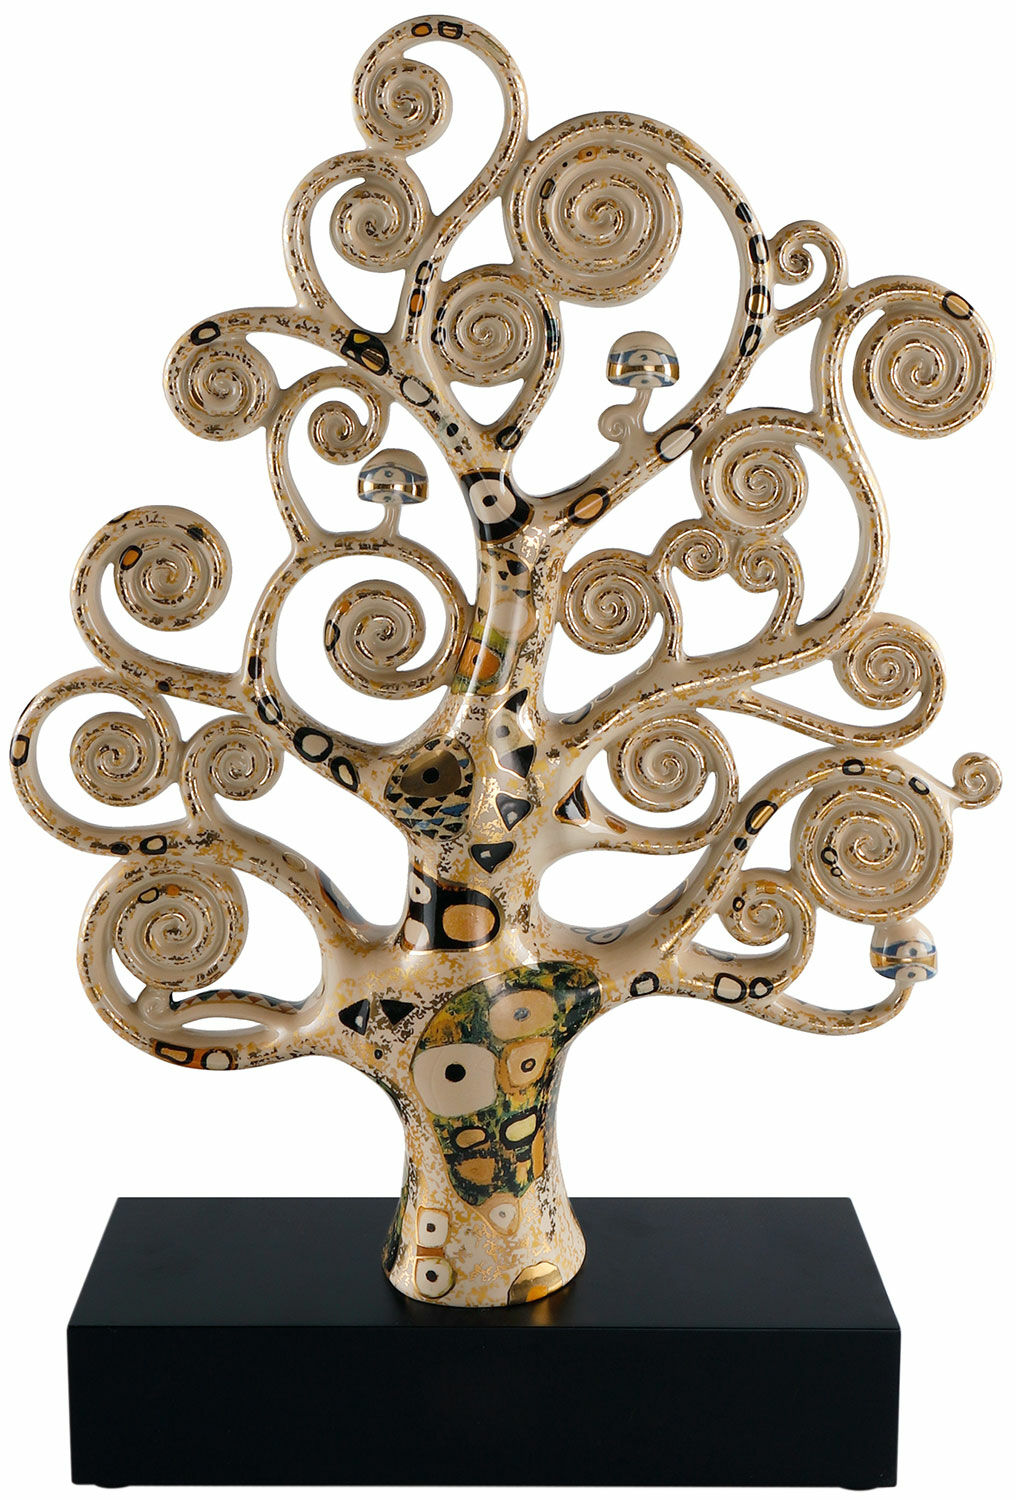 Porzellanskulptur "Lebensbaum" von Gustav Klimt